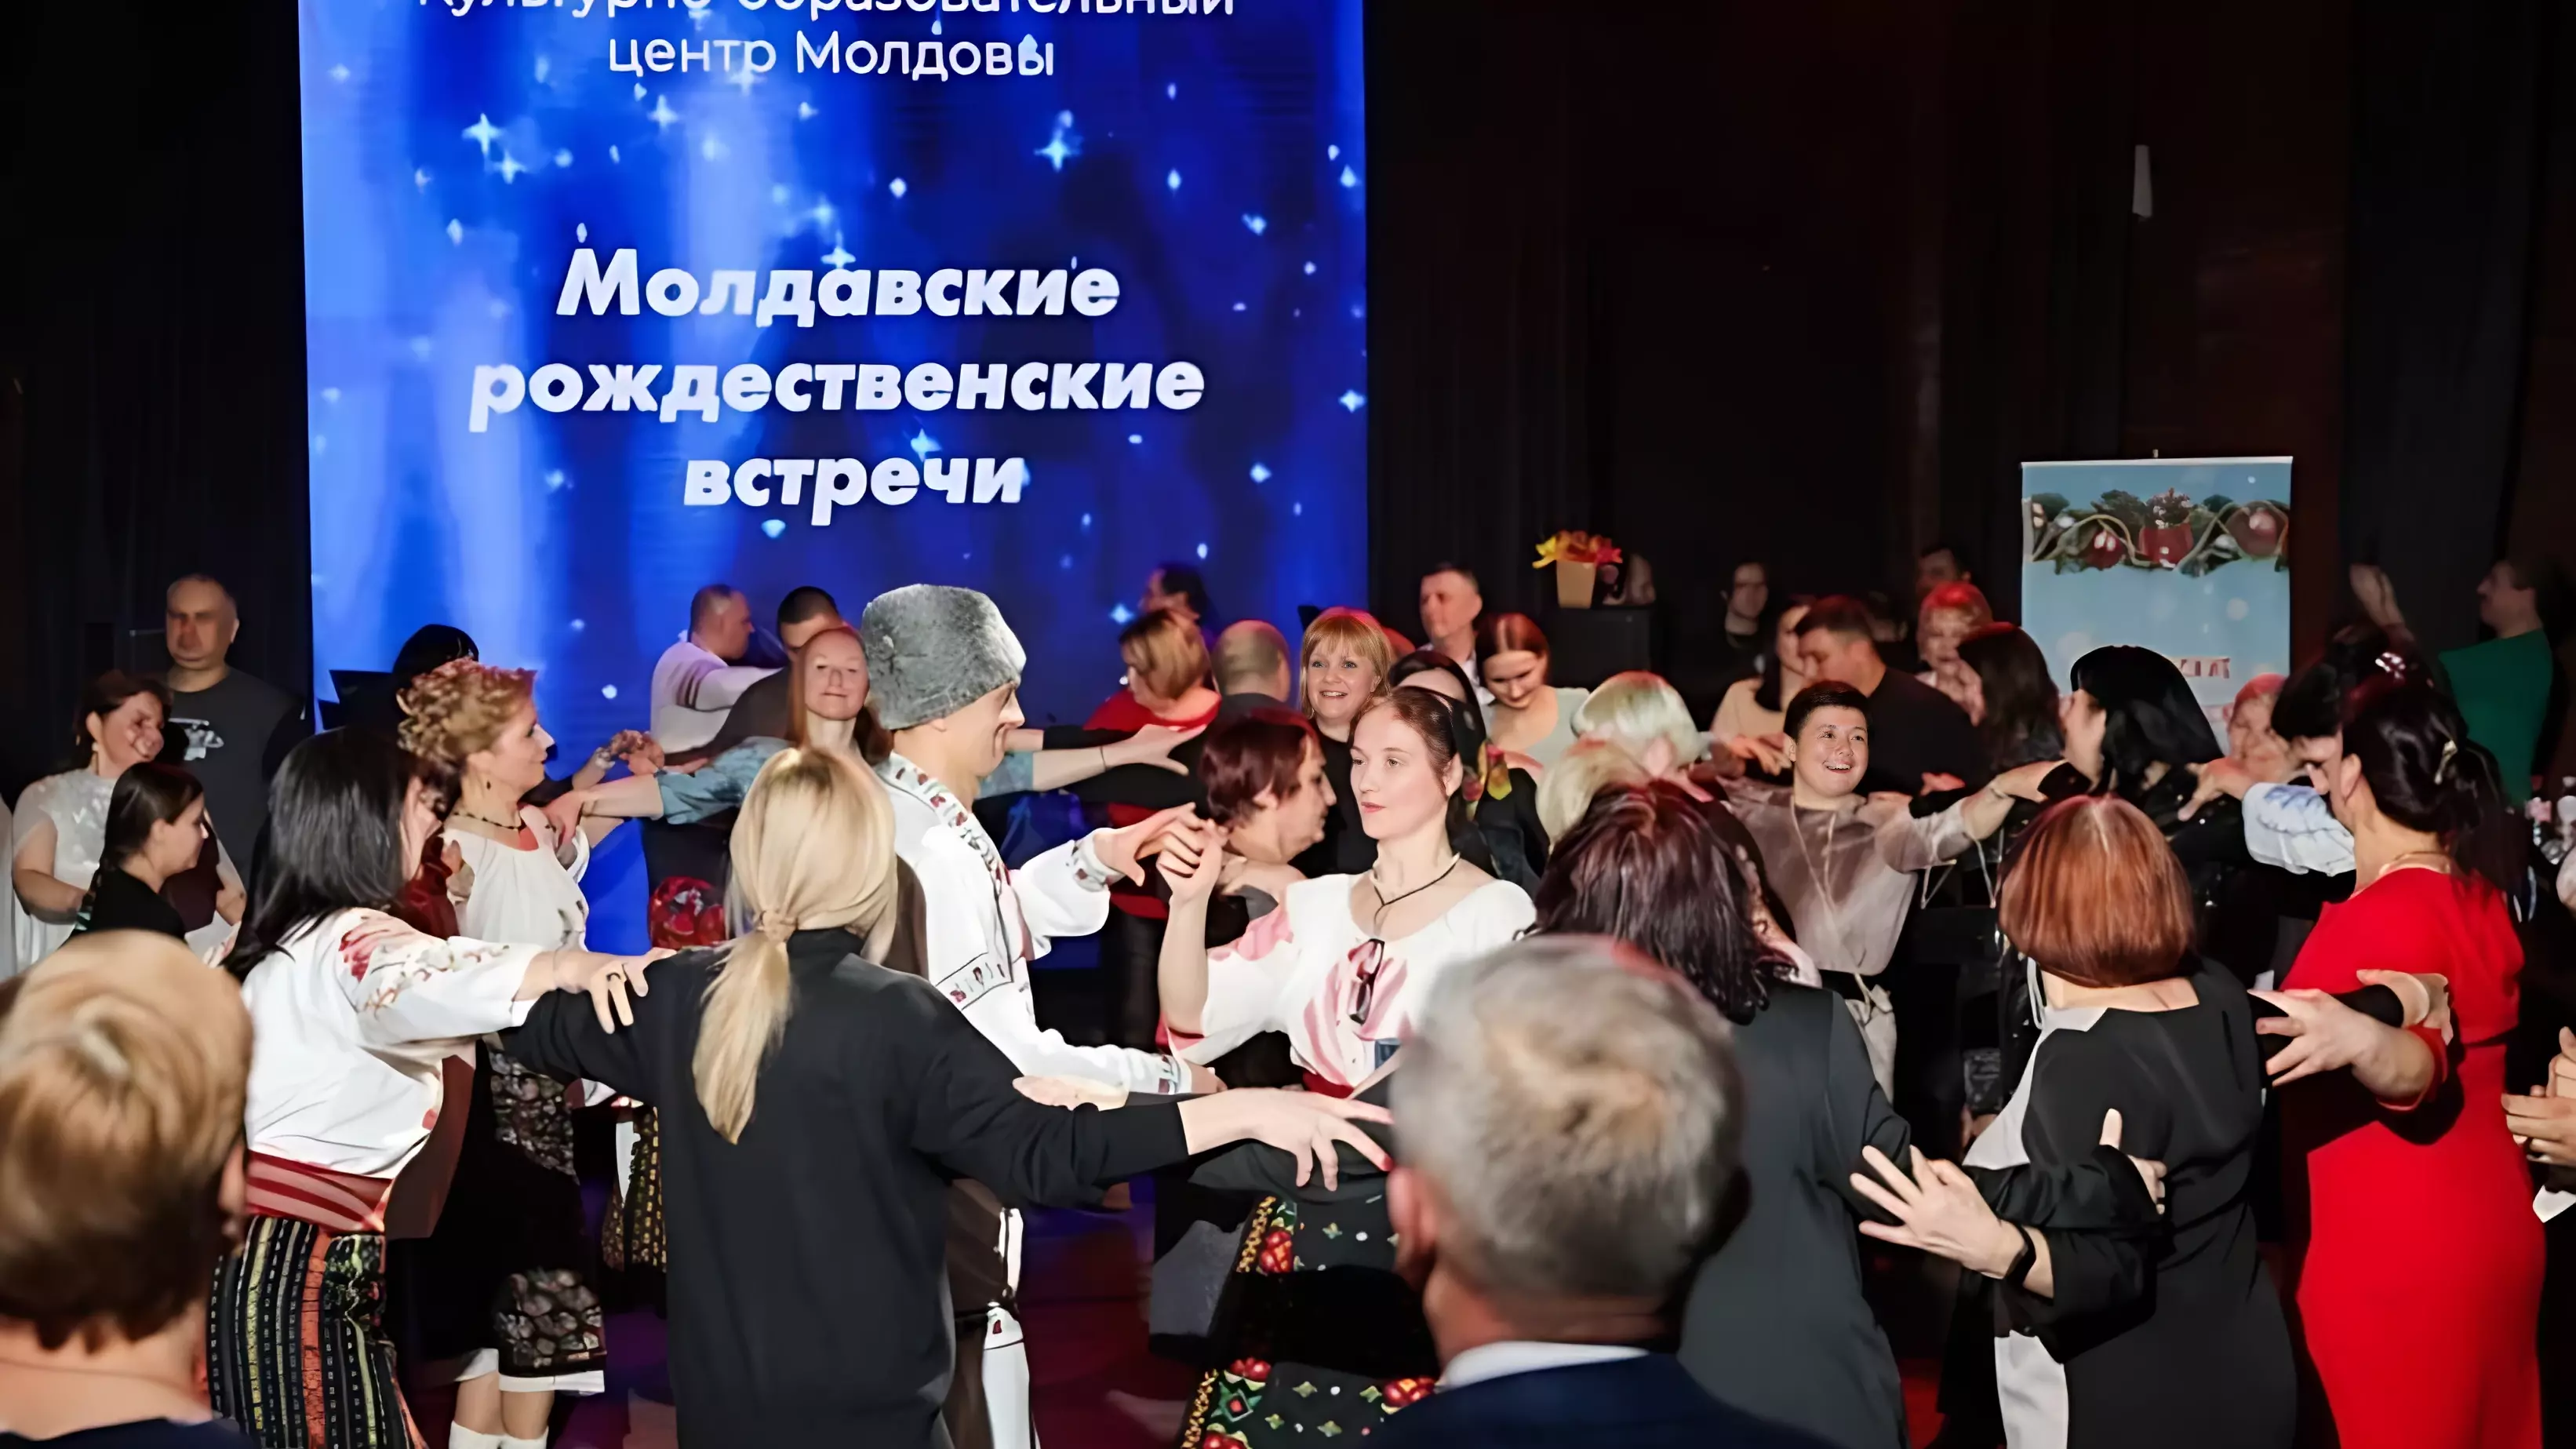 Культурно-образовательный центр Молдовы провел рождественскую встречу в Москве